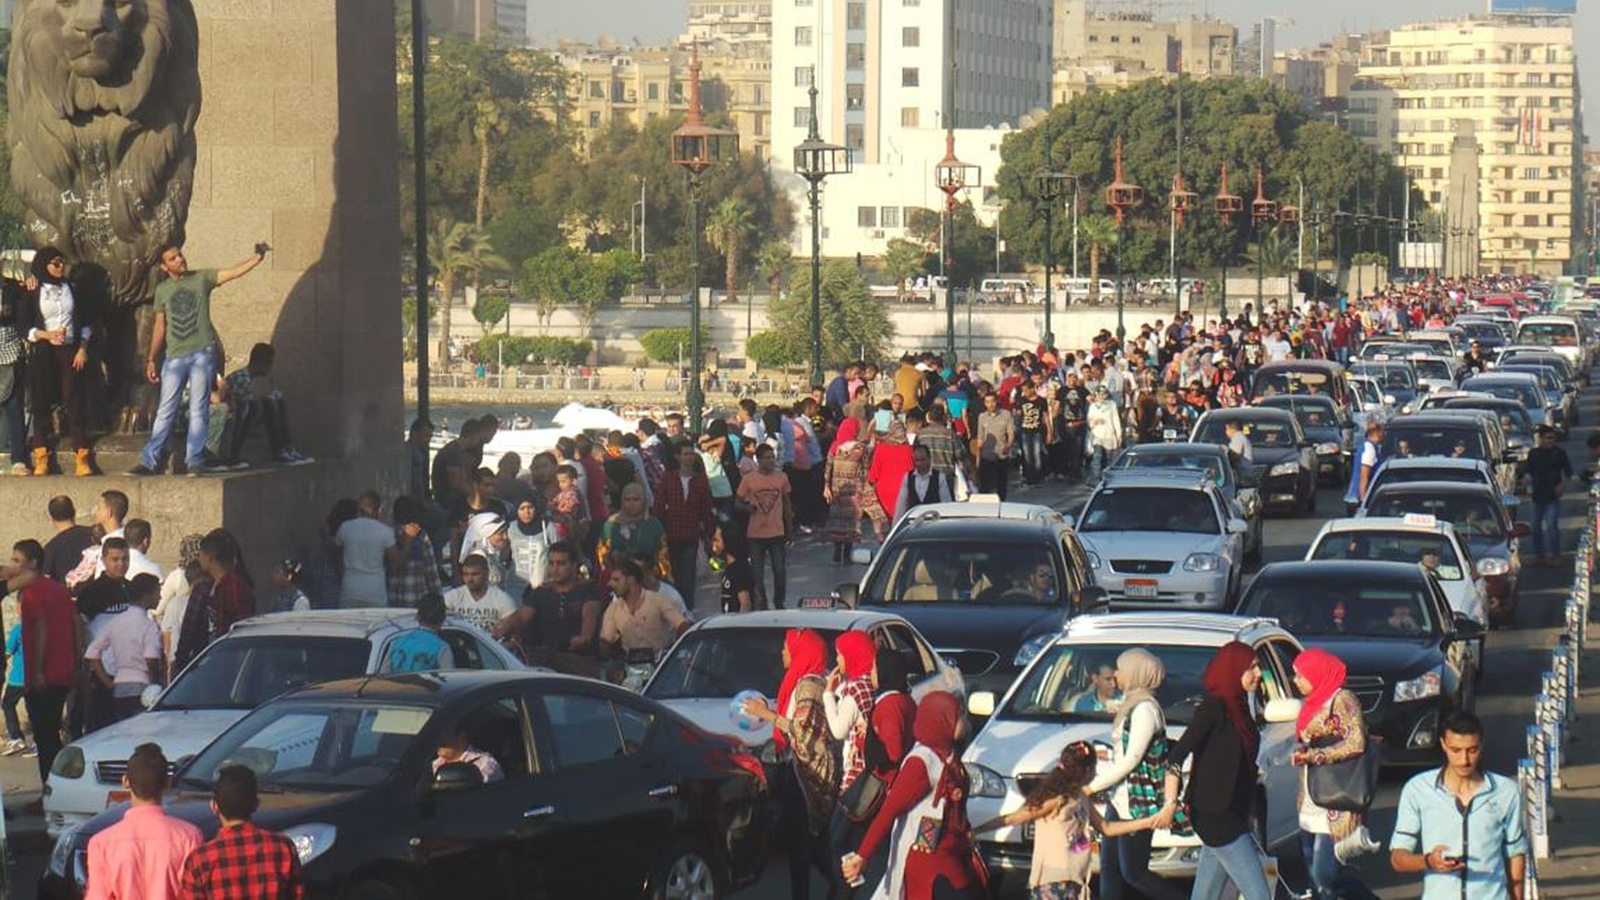 ‪حجم استهلاك السوق المحلية عام 2017 بلغ نحو مئة ألف سيارة نصفها أنتج بمصر‬ 
حجم استهلاك السوق المحلية عام 2017 بلغ نحو مئة ألف سيارة نصفها أنتج بمصر (الجزيرة)
